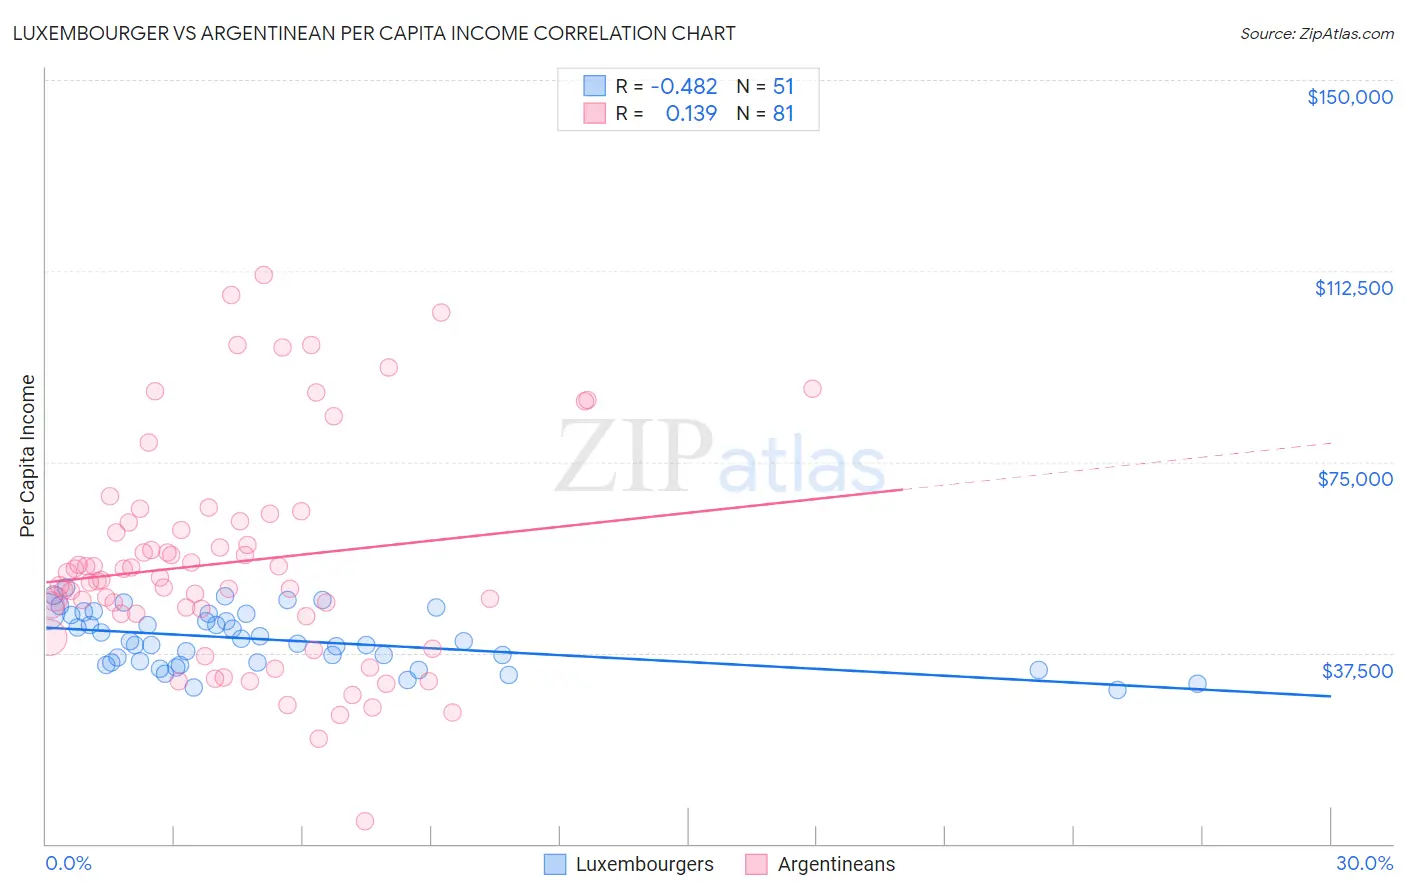 Luxembourger vs Argentinean Per Capita Income